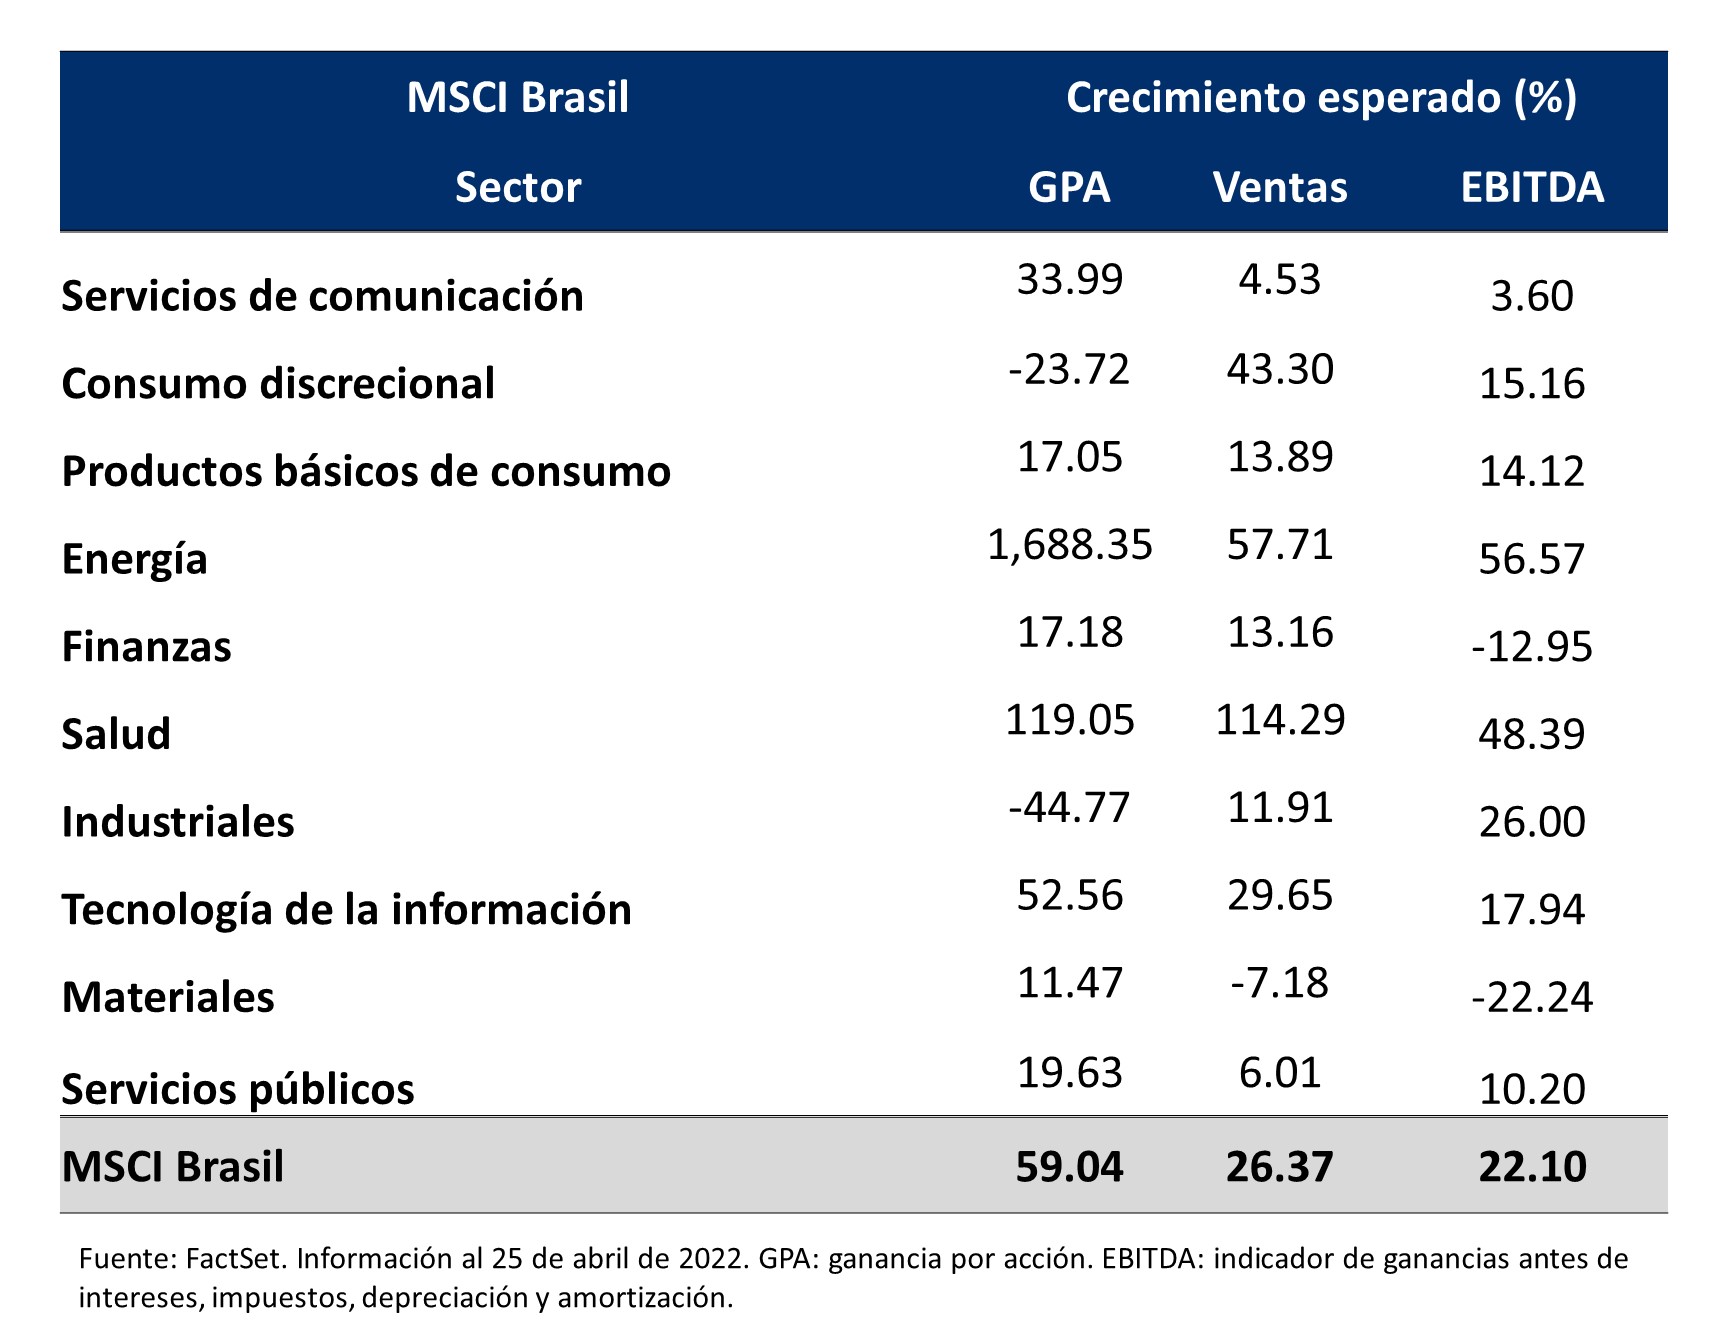 Esta tabla describe las distintas categorías del índice MSCI para Brasil y su crecimiento esperado.